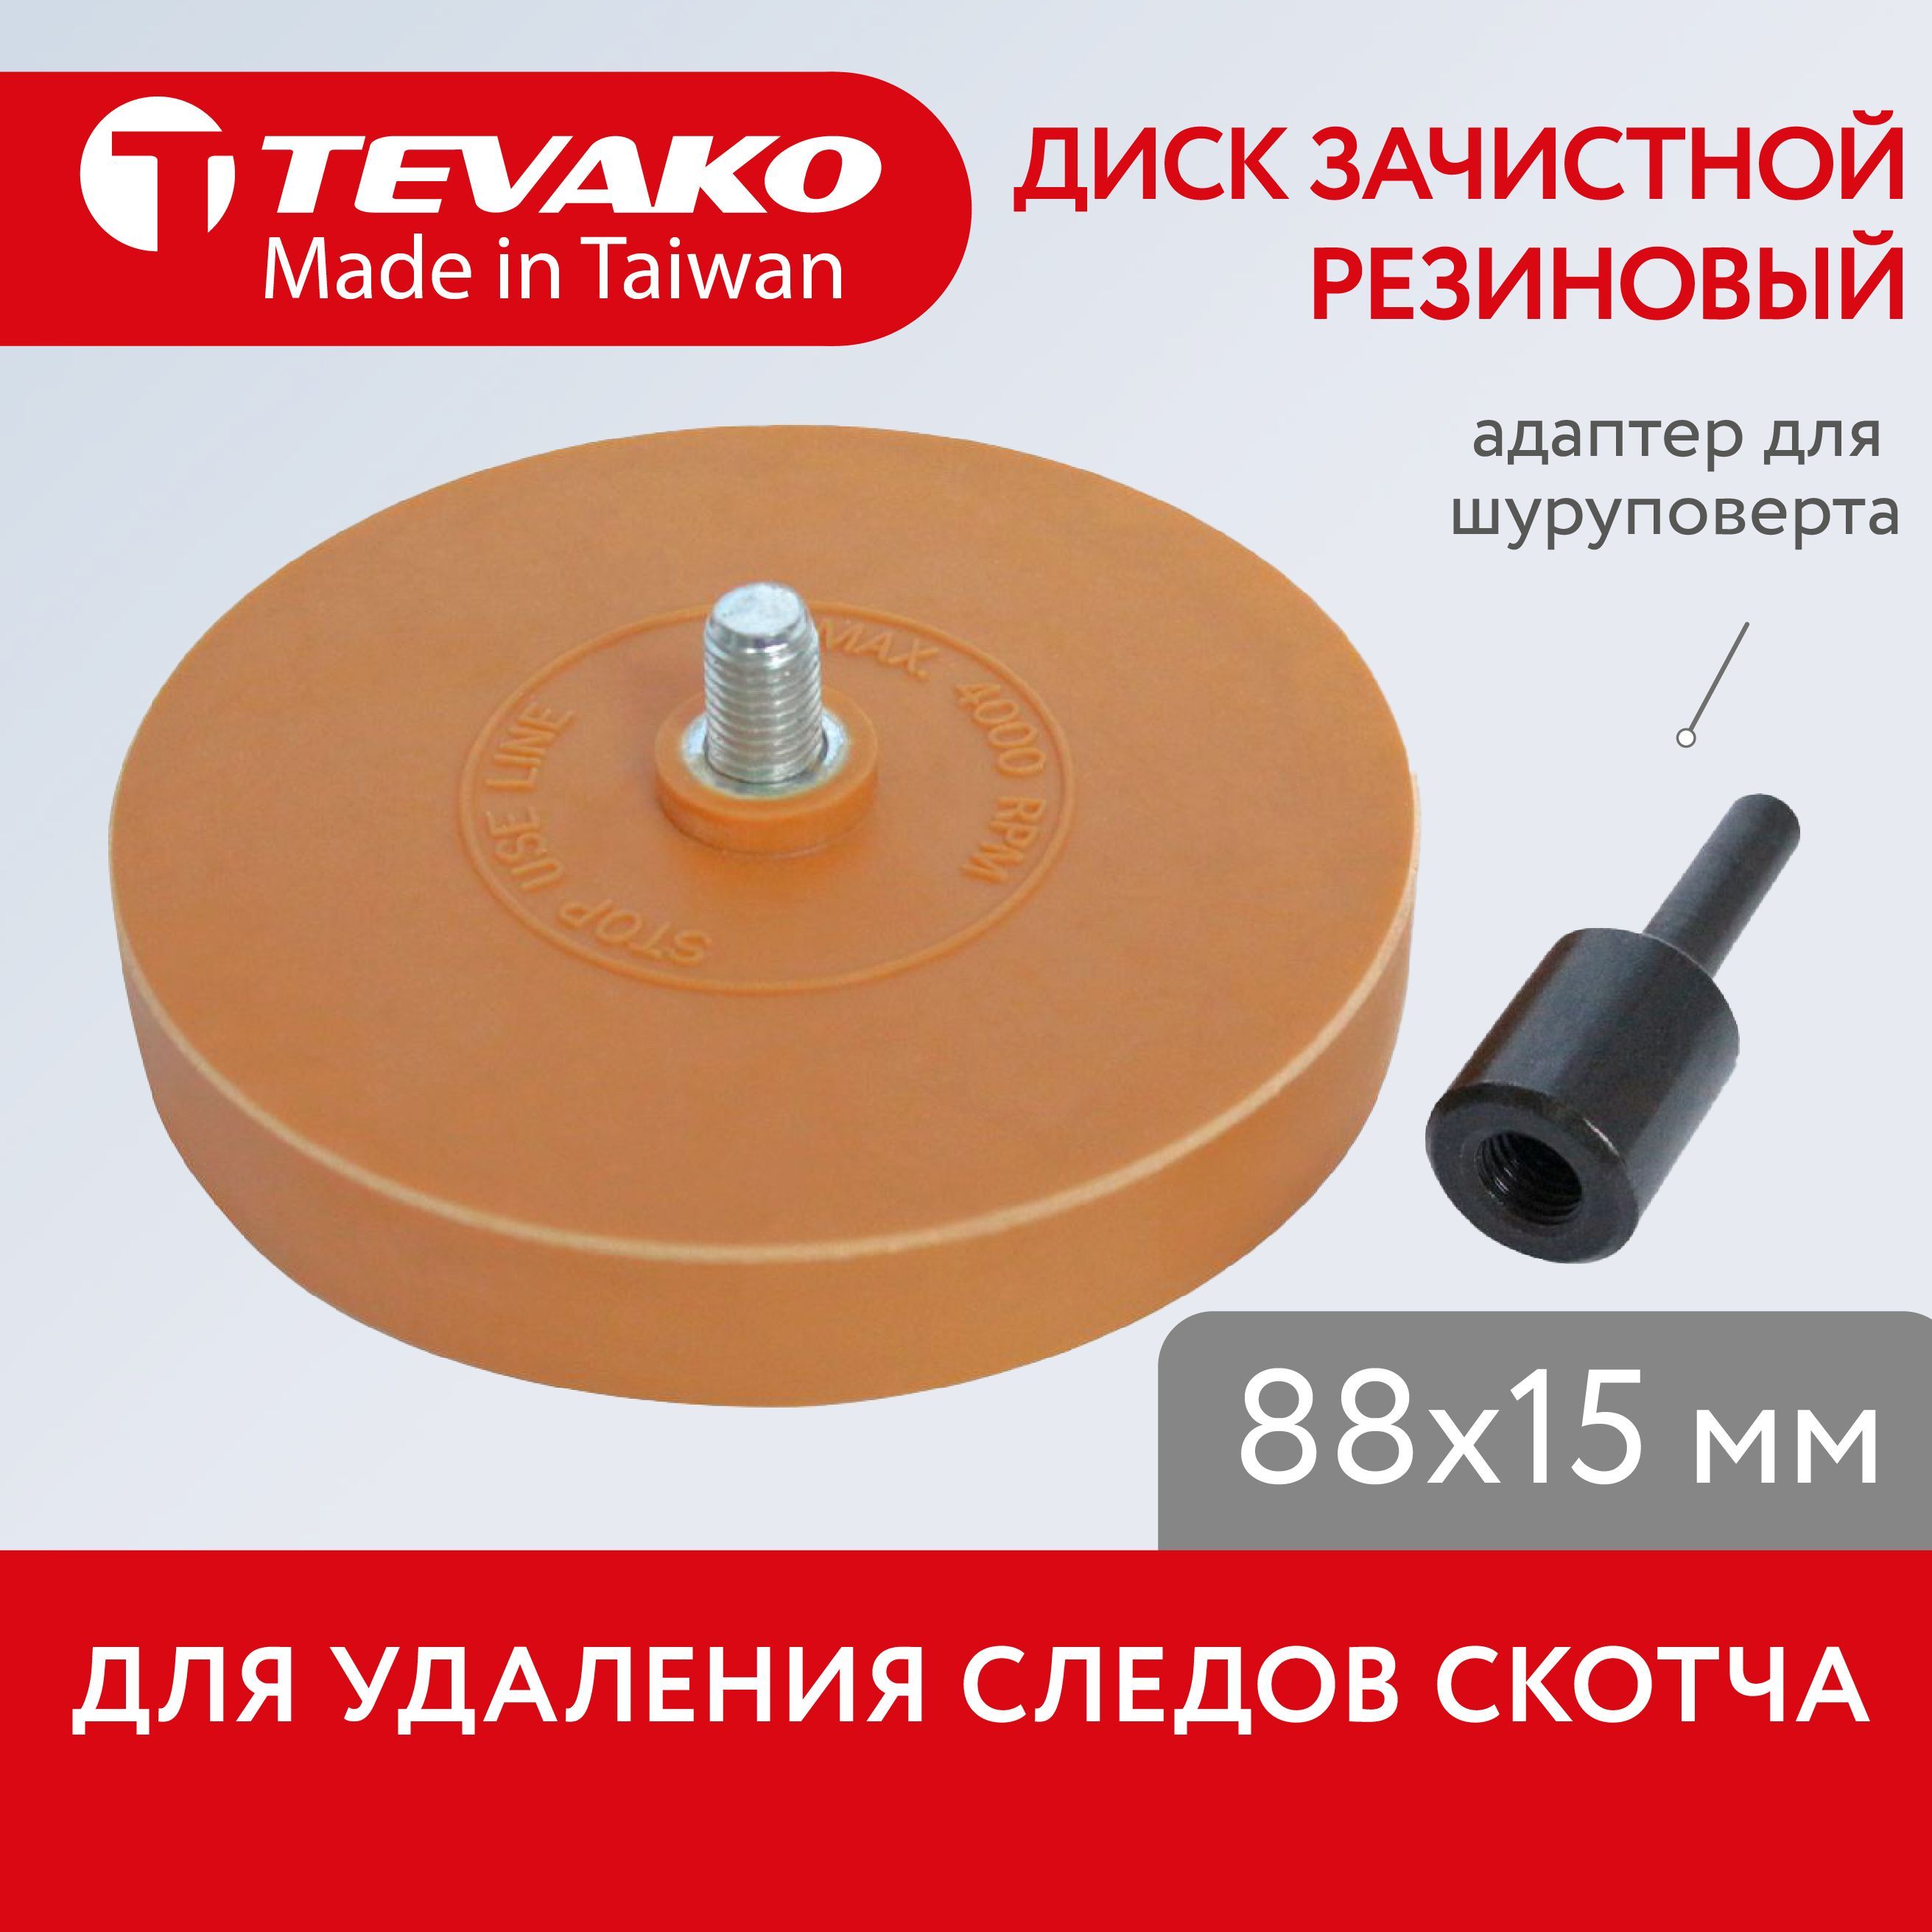 Круг для снятия скотча. Tevako tvk08055. Диск из вулканизированного волокна.